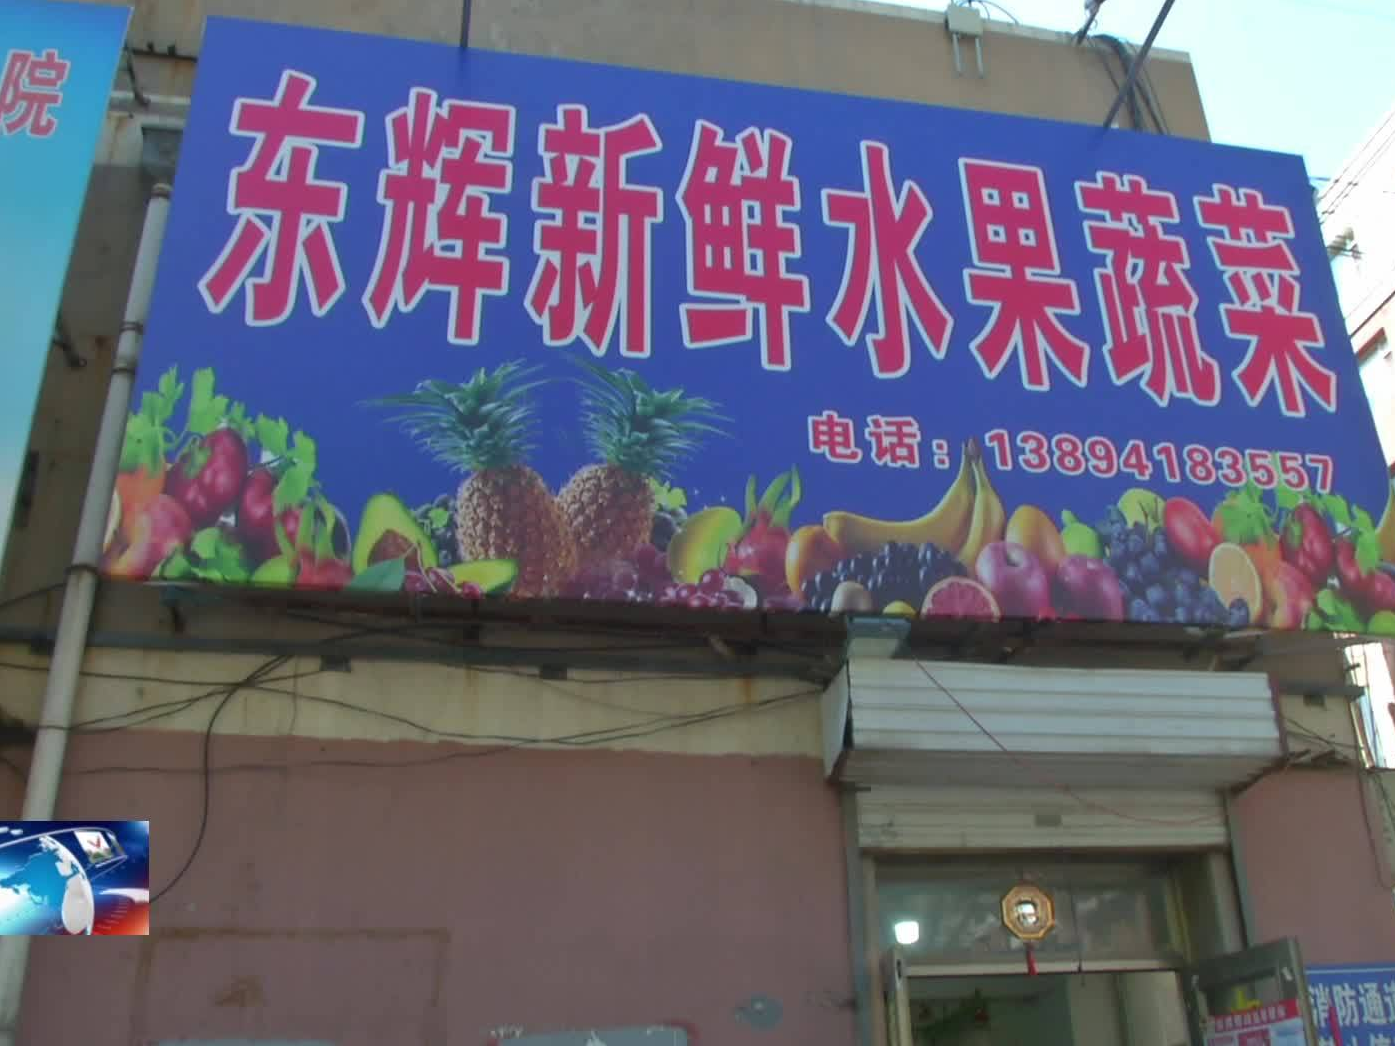 消极执行防疫措施  两家蔬菜水果店被处罚